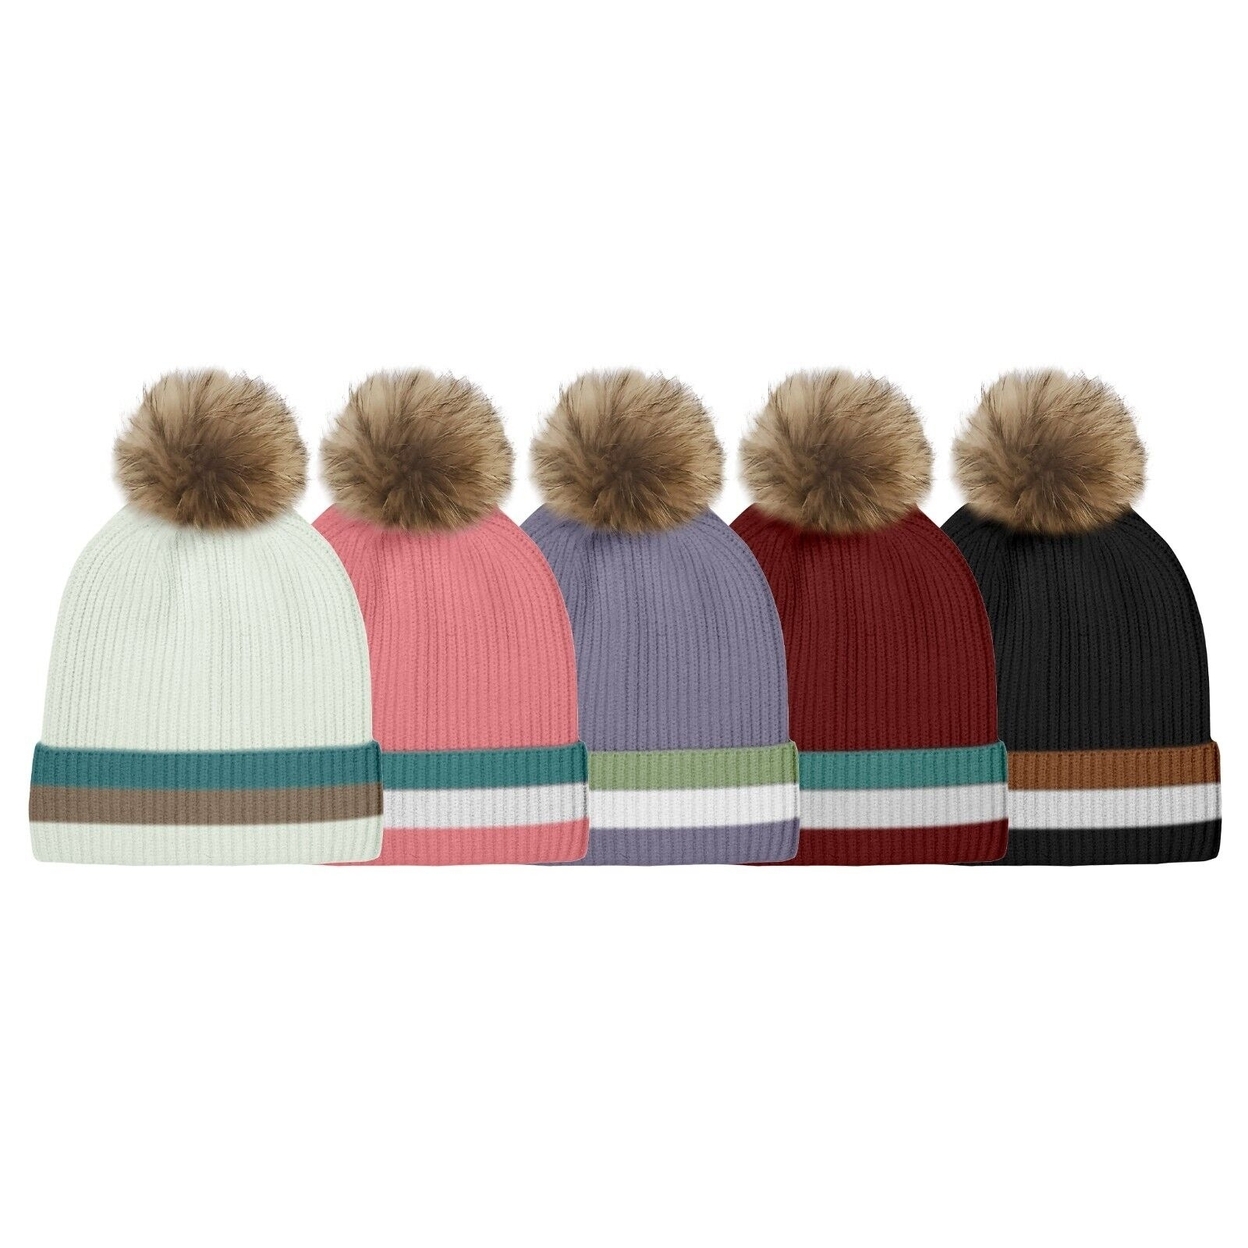 3-Pack: Women's Ultra-Soft Winter Warm Knit Feel Pom Pom Hat W/ Faux Fur Lining - Striped